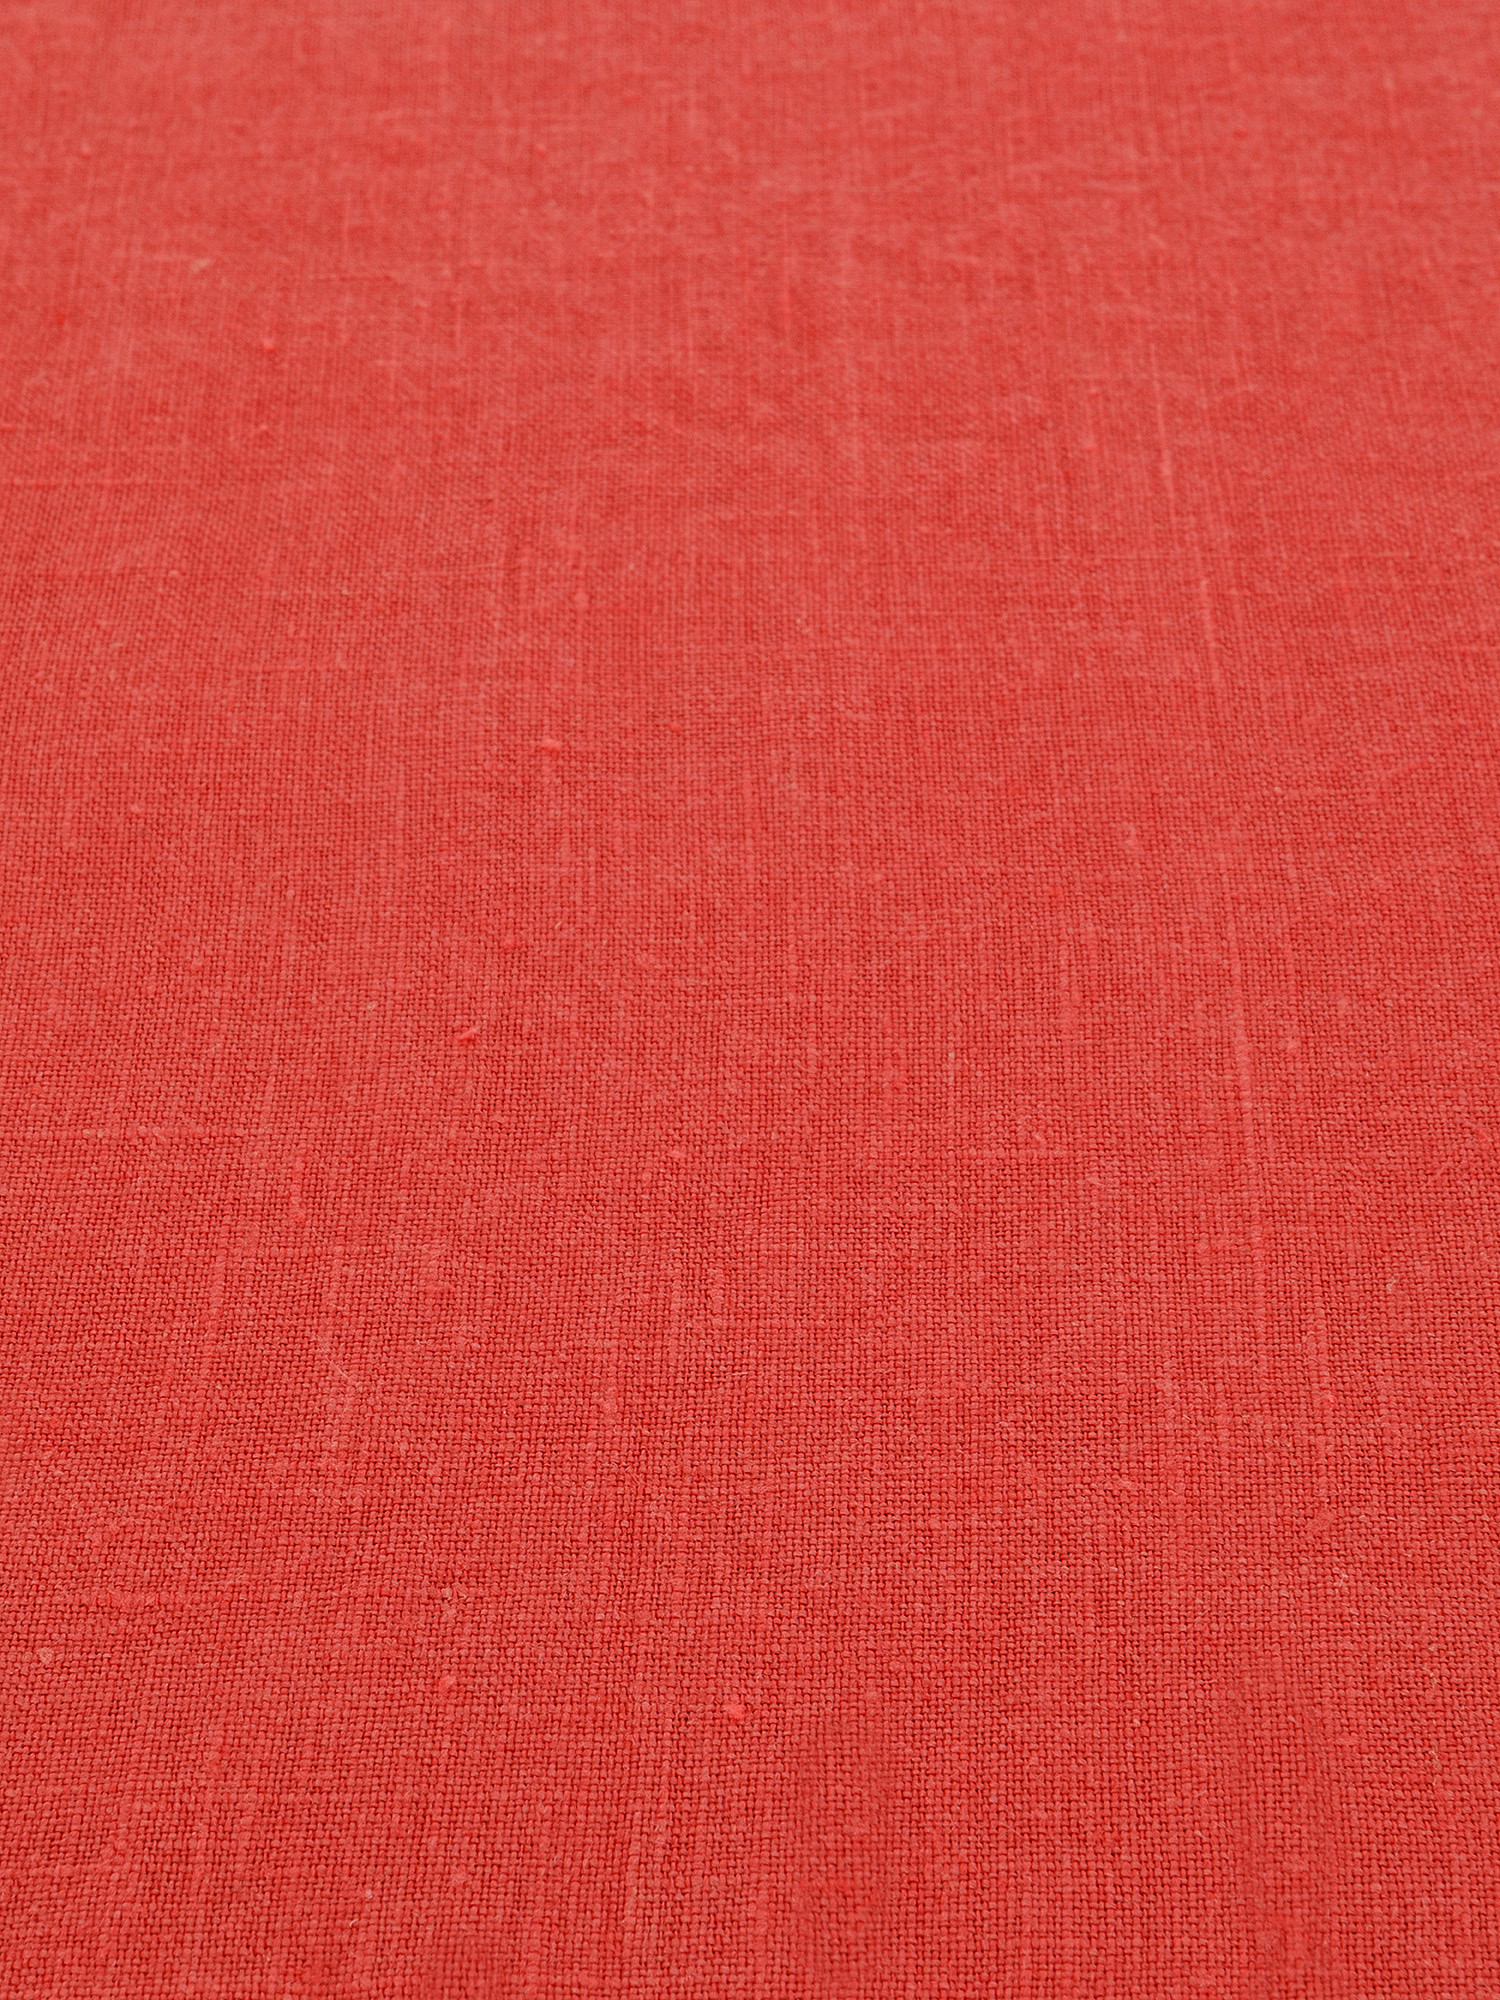 Tovaglia rotonda puro lino lavato tinta unita, Rosso corallo, large image number 1